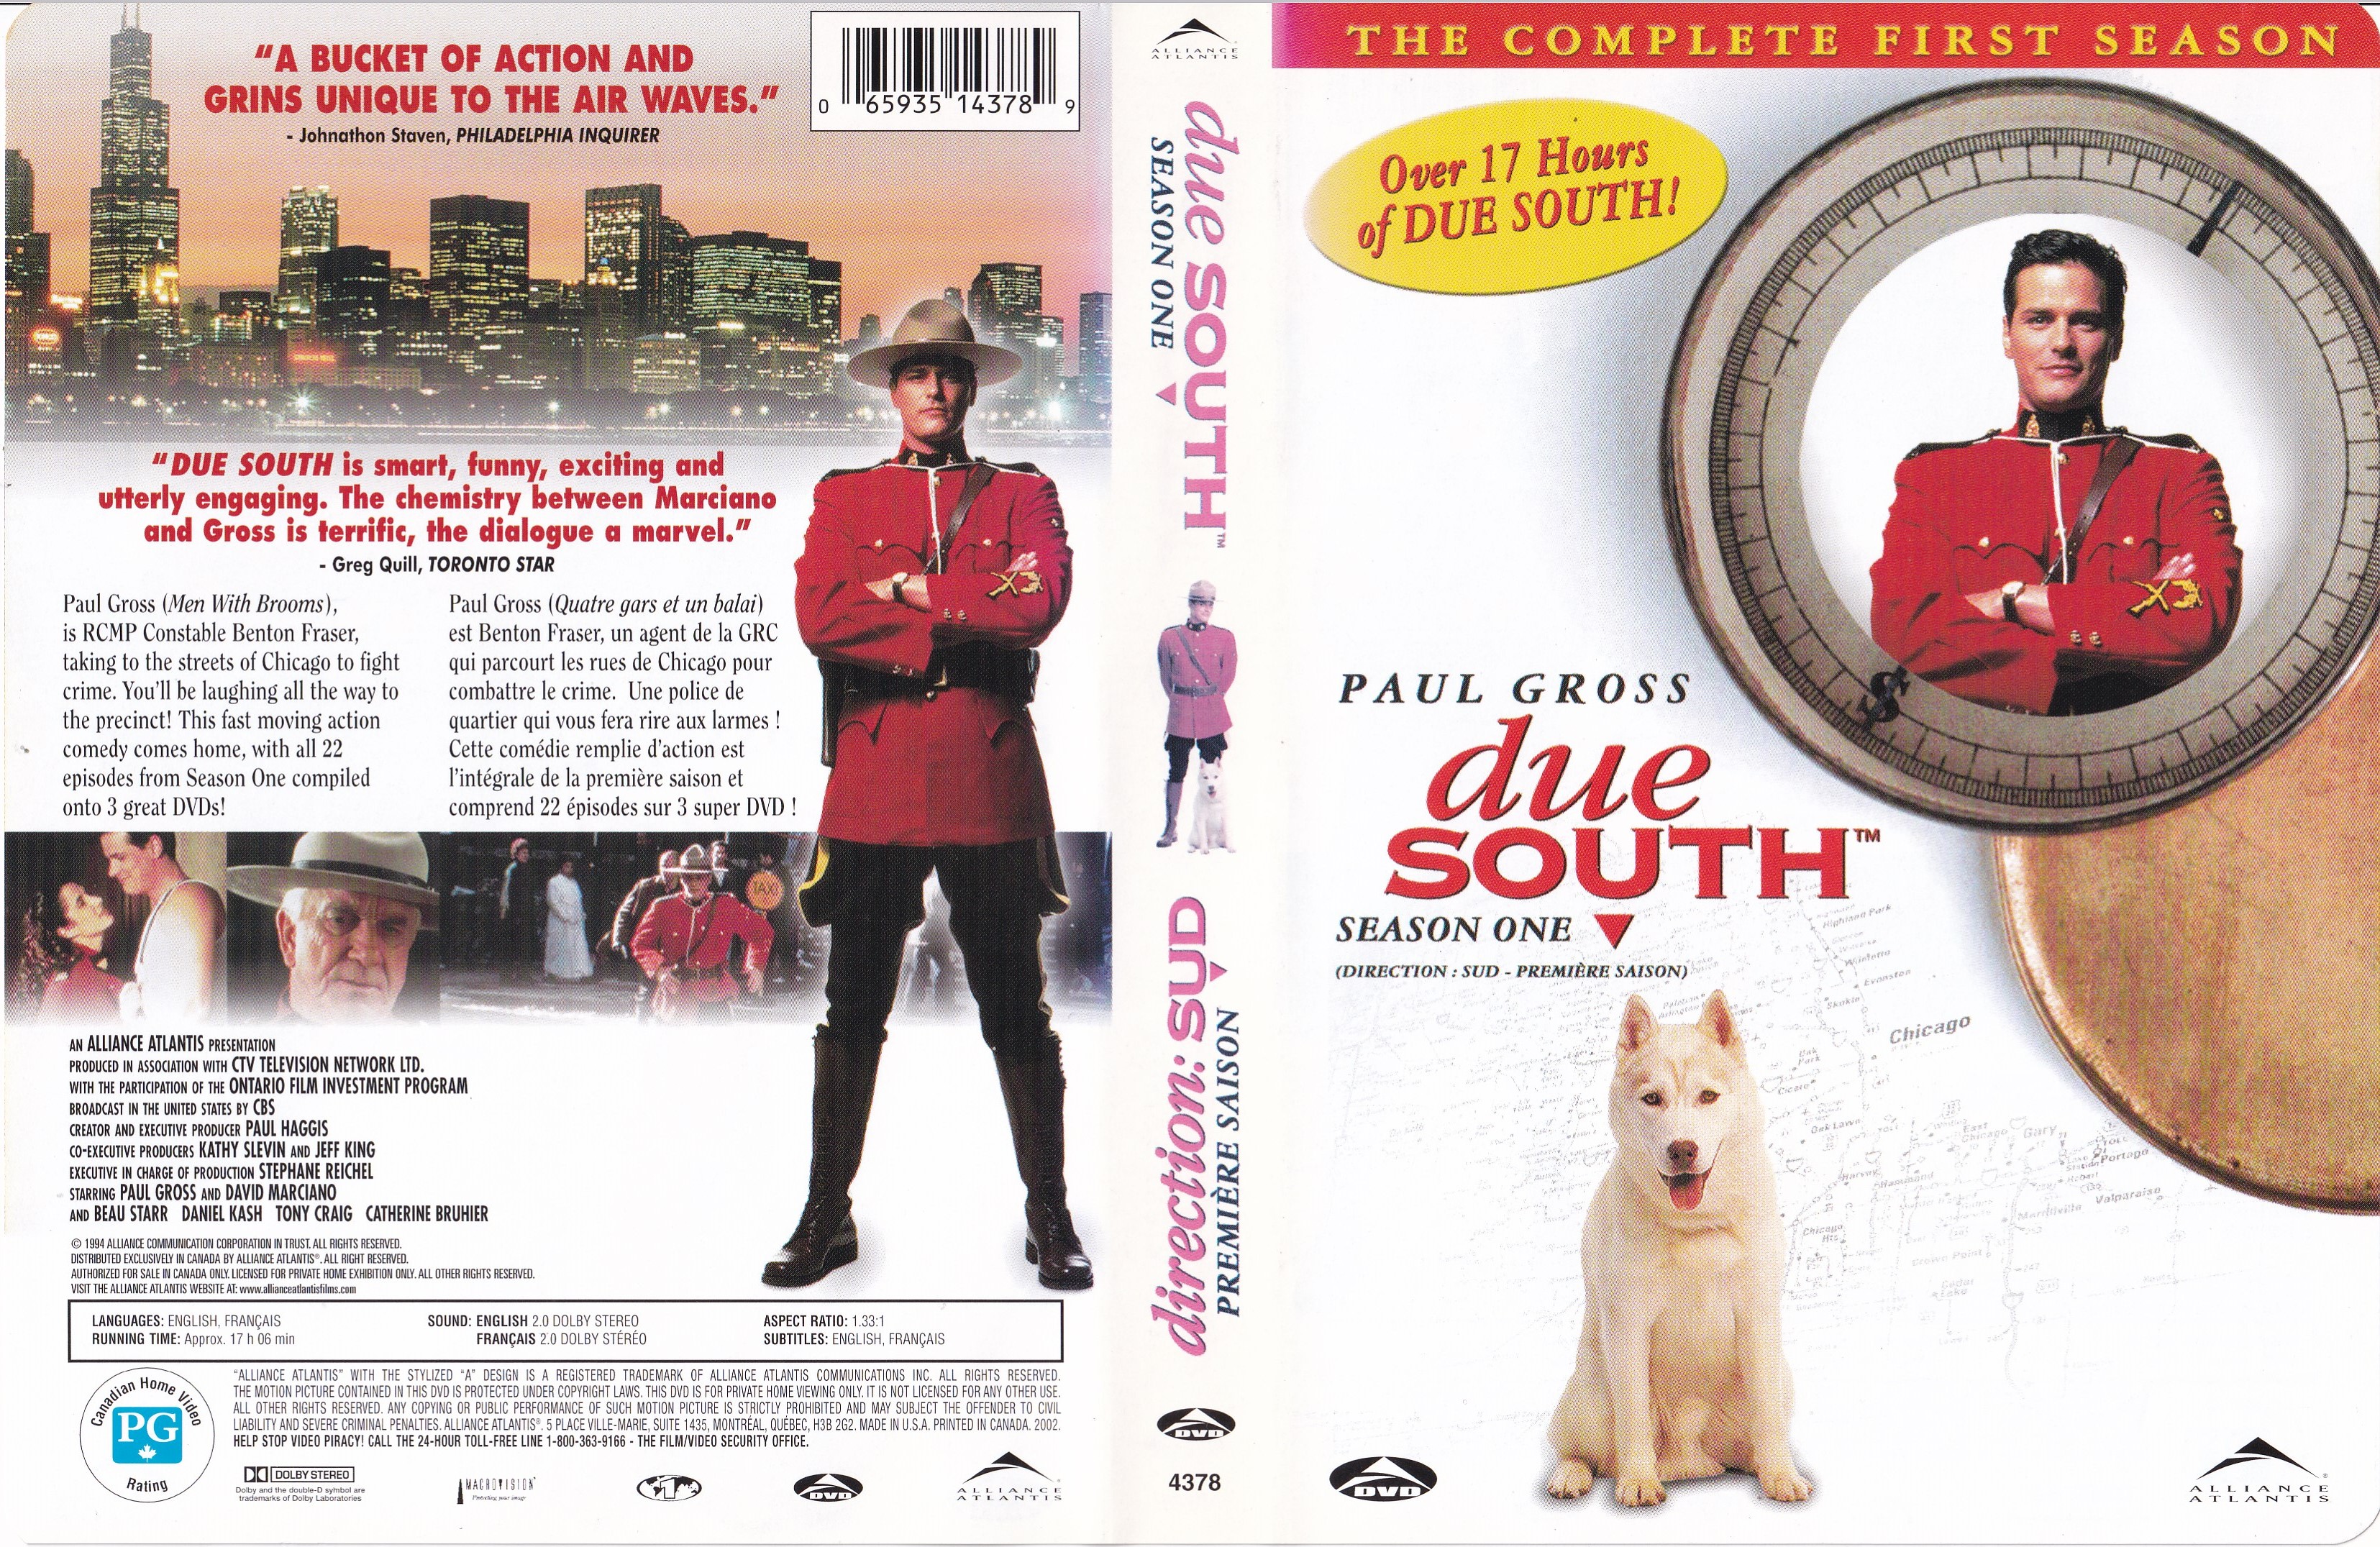 Jaquette DVD Due South - Direction Sud - Un Tandem de Choc Saison 1 (Canadienne) v2